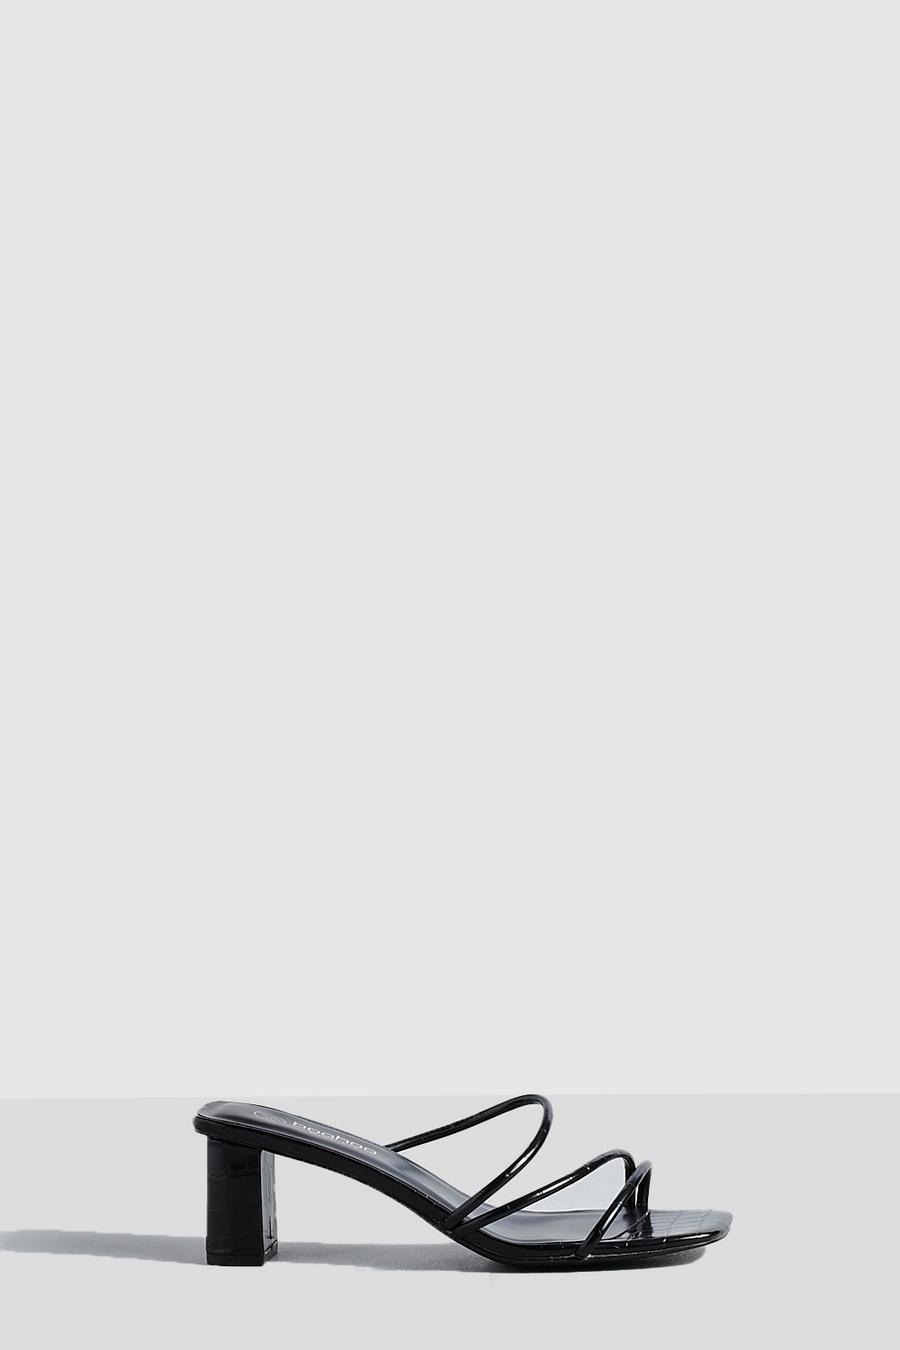 Sandali Mules a calzata ampia con laccetti e tacco basso a blocco, Black